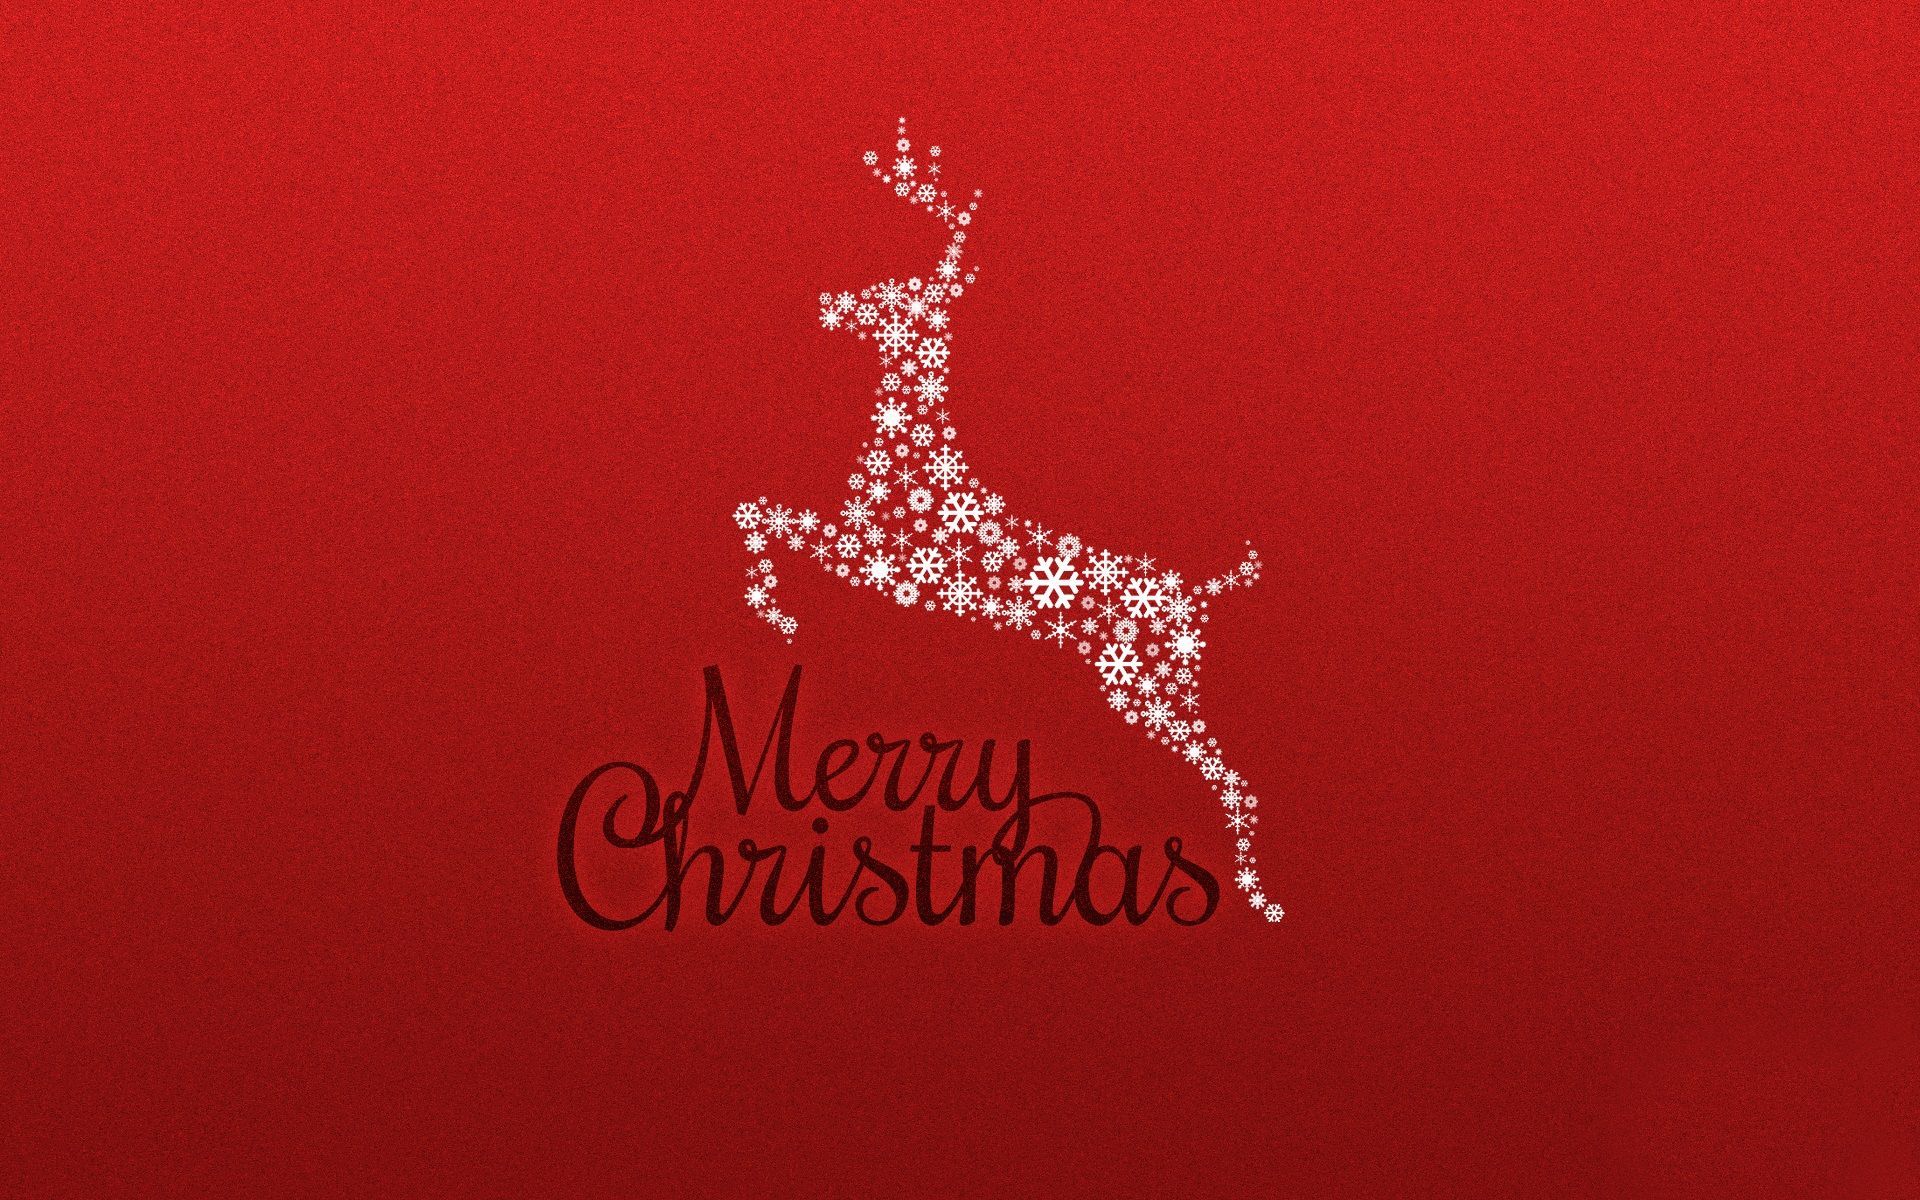 Merry Christmas. Christmas wallpaper tumblr, Christmas desktop wallpaper, Merry christmas wallpaper